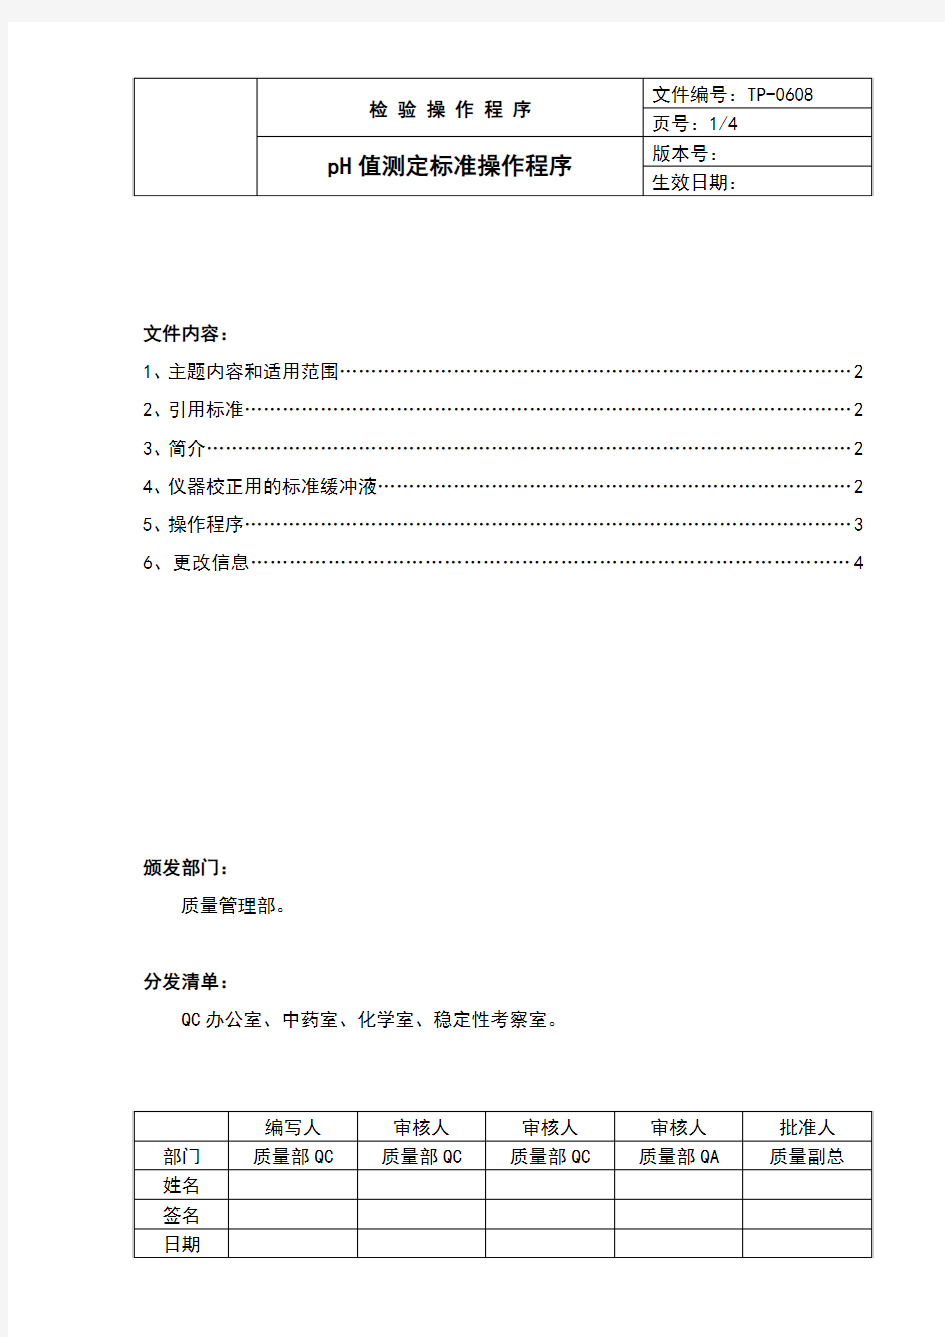 中国药品检验标准操作规范2010年版pH值测定